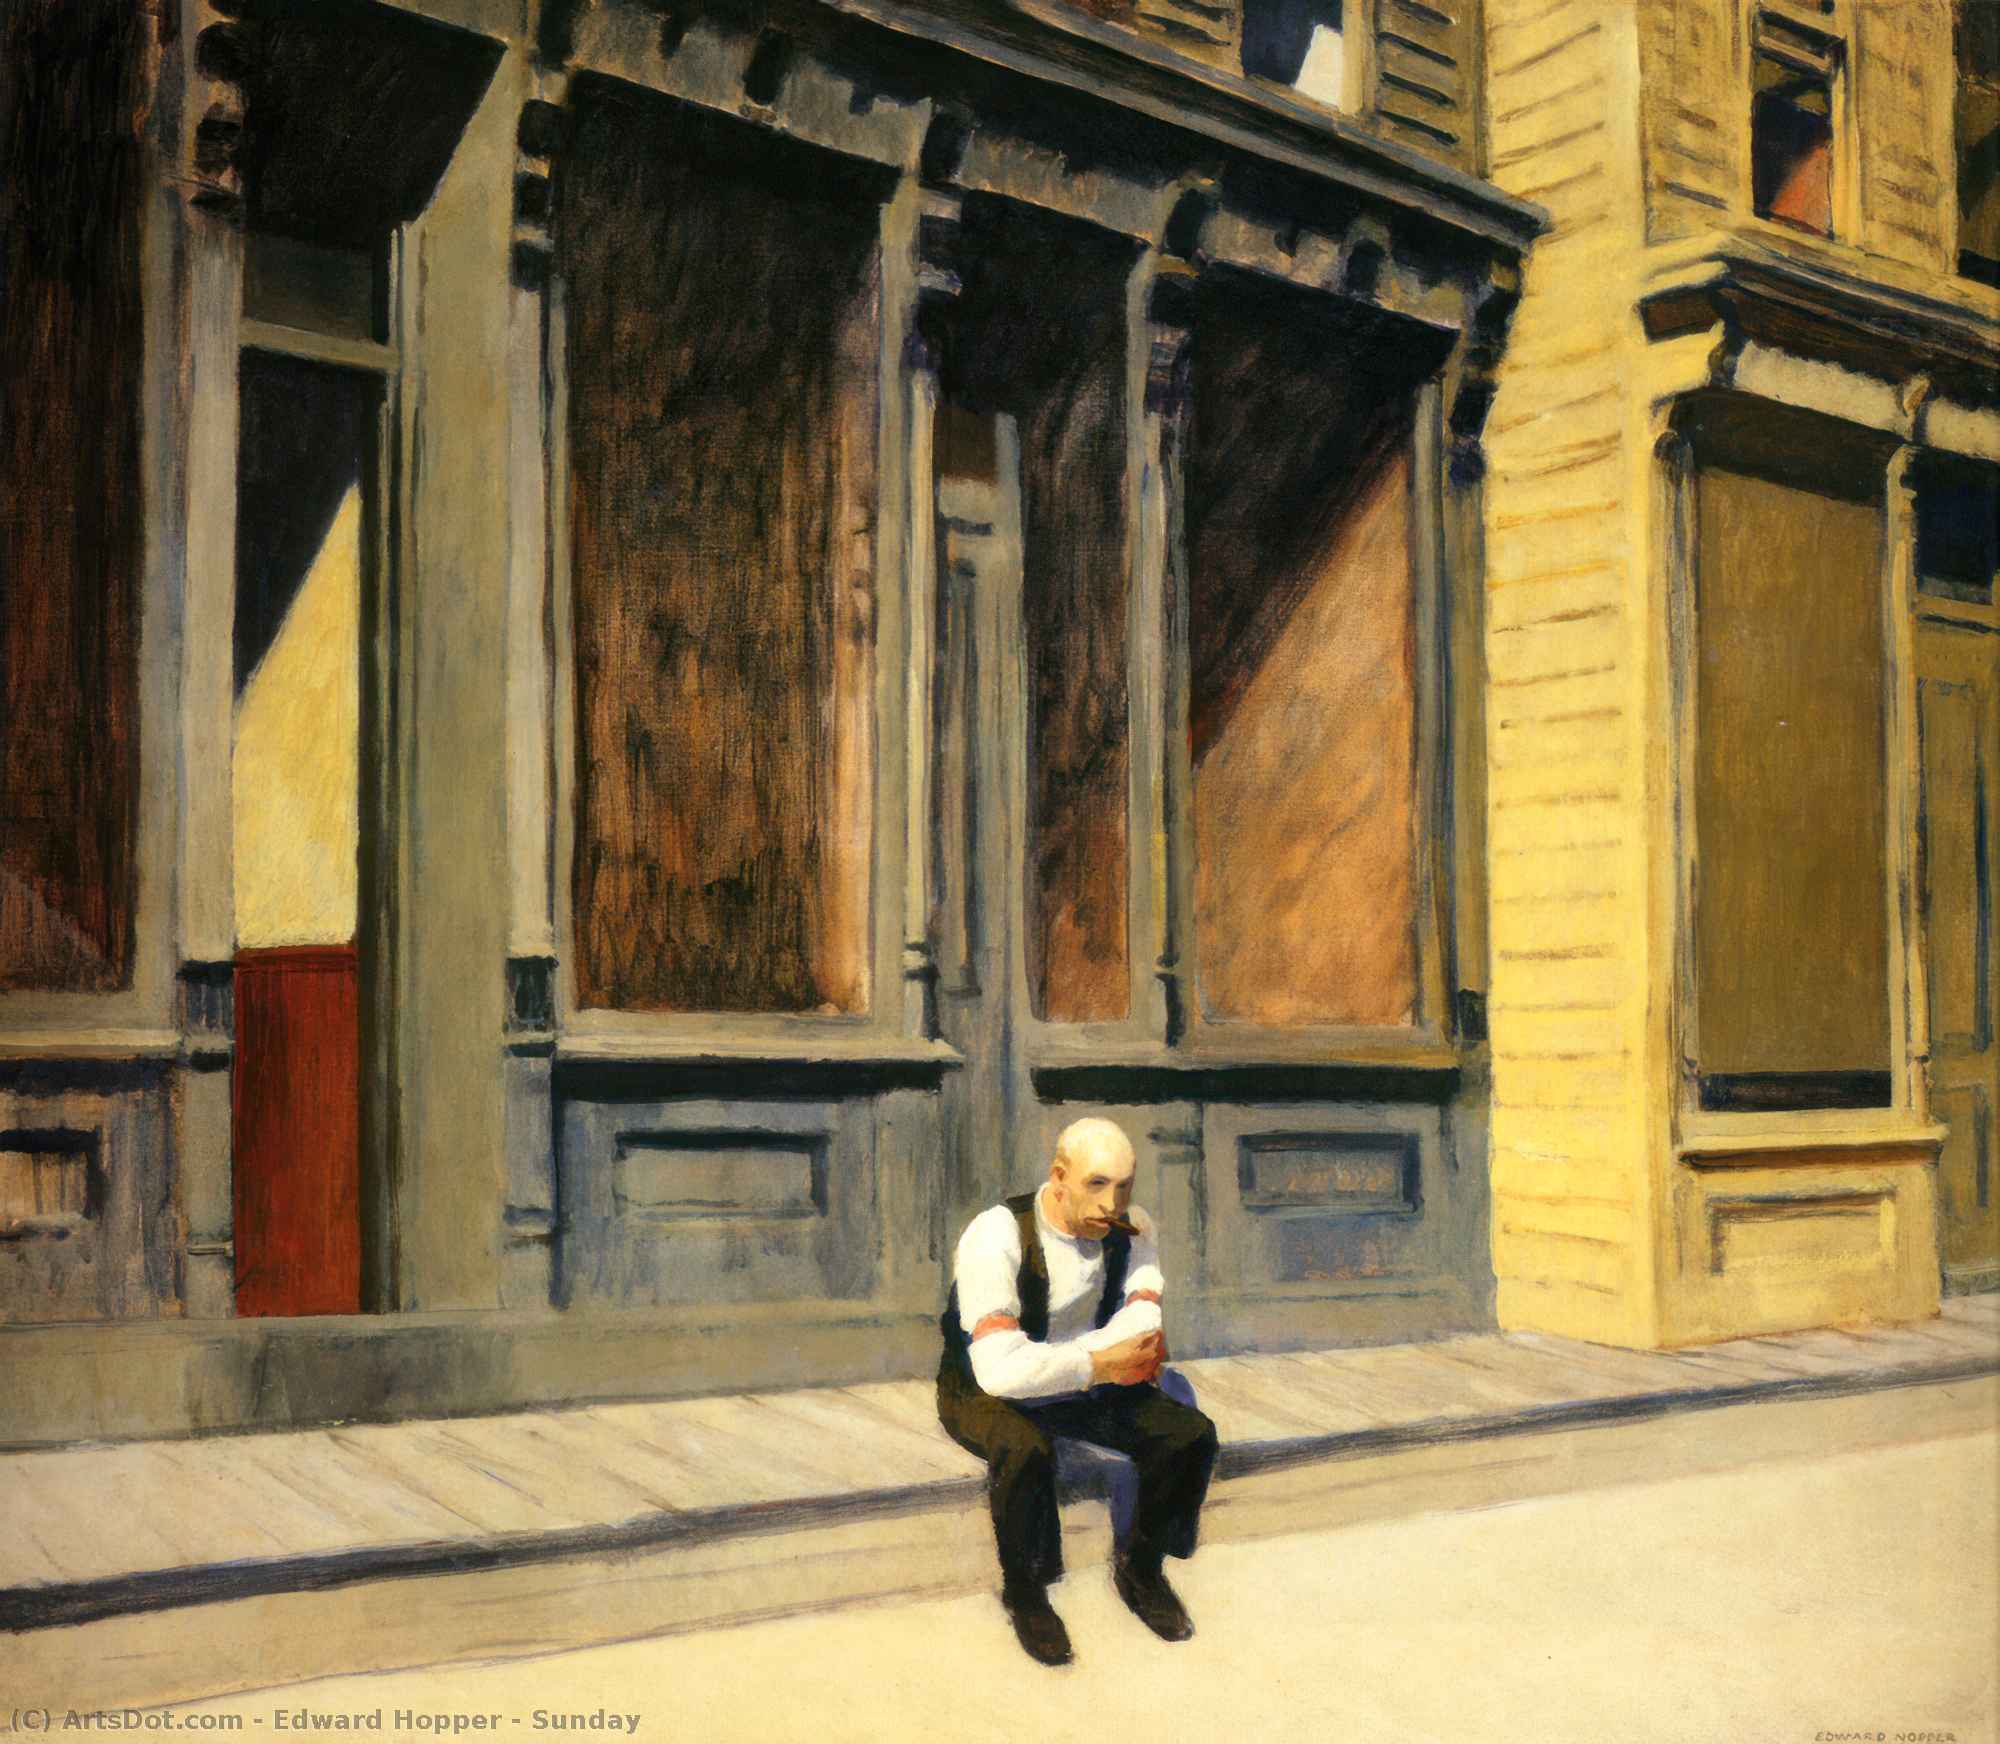 購入 美術館の複製、美術複製、絵画複製、美術館の品質プリント、美術品の複製、有名な絵画の複製、博物館の品質再現、キャンバスにアートプリント 日曜日, 1926 バイ Edward Hopper (に触発された) (1931-1967, United States) | ArtsDot.com